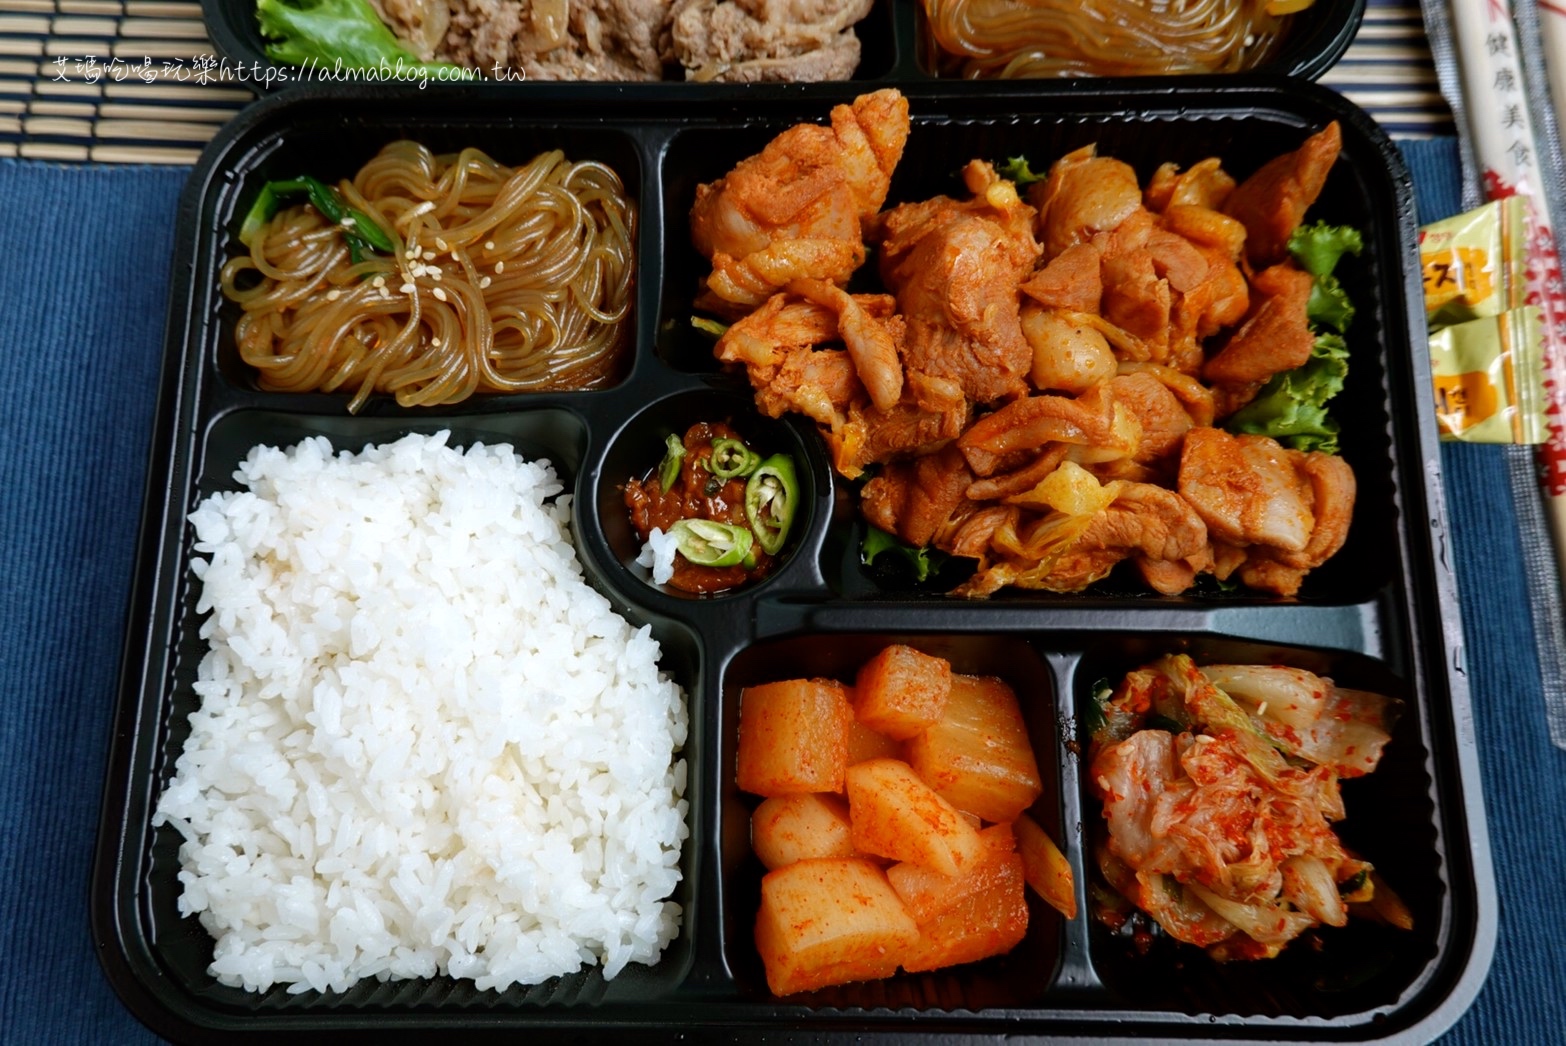 便當,桃園韓式,與肉食堂,花舞豬,韓式便當,韓式烤肉